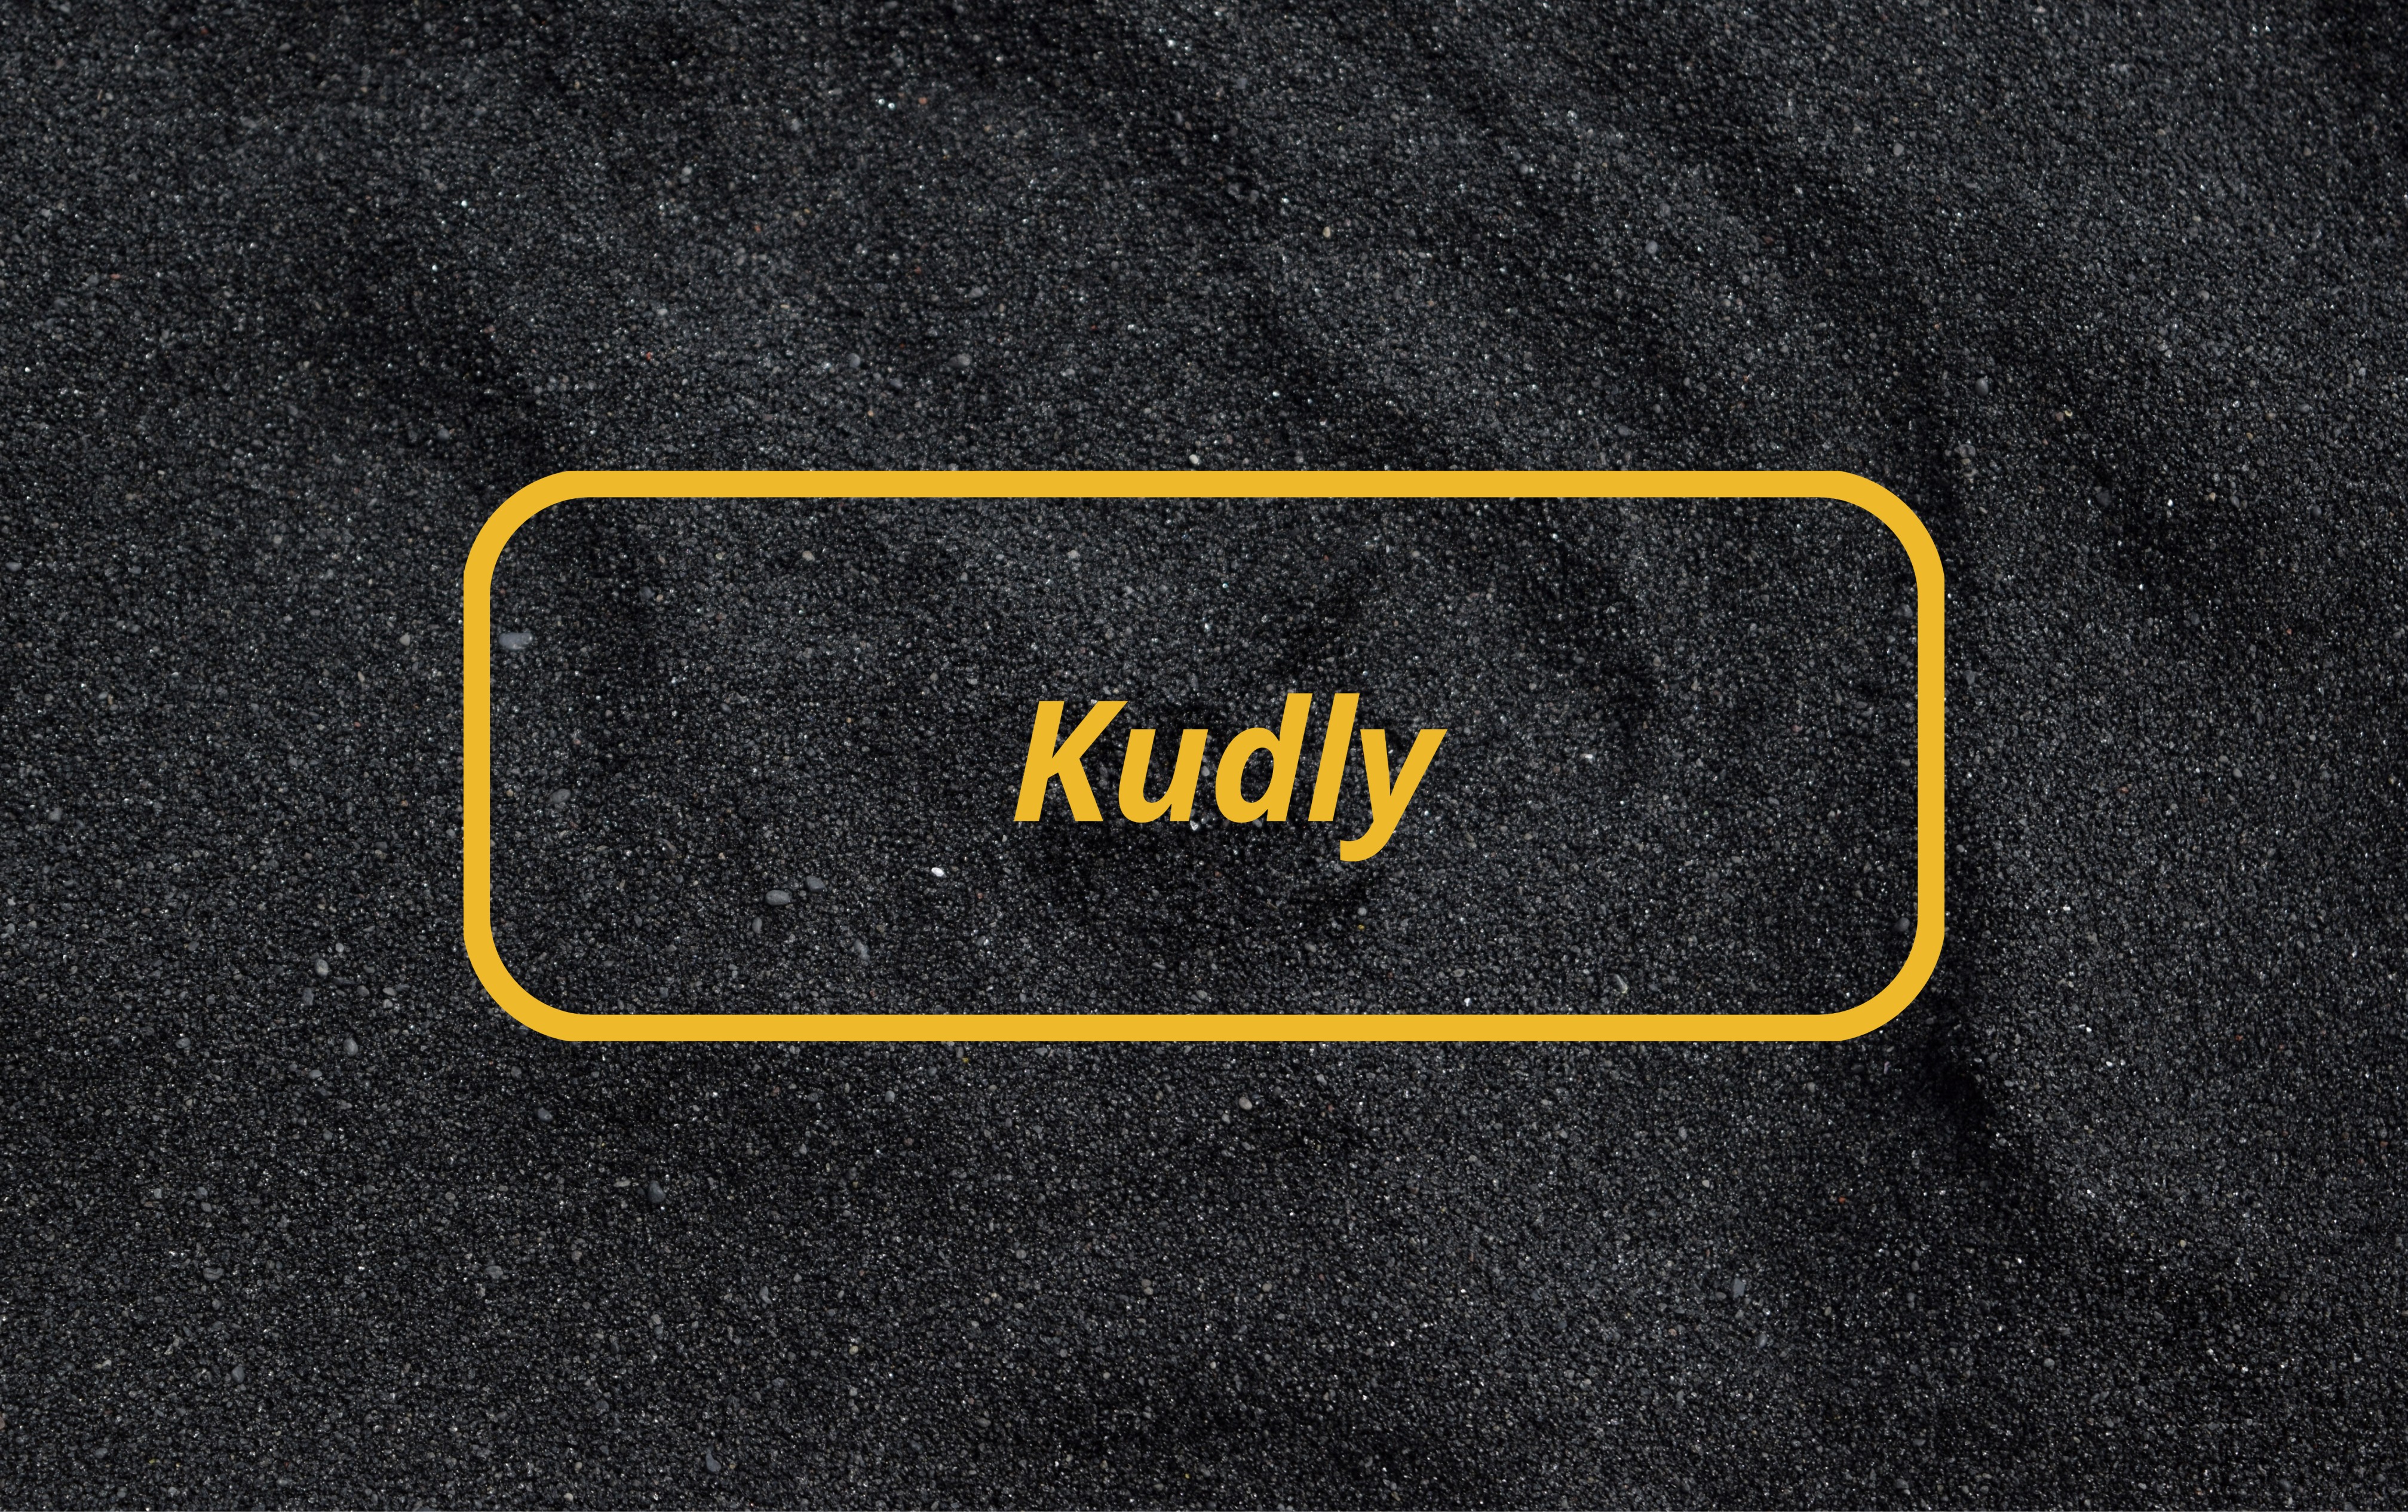 Kudly